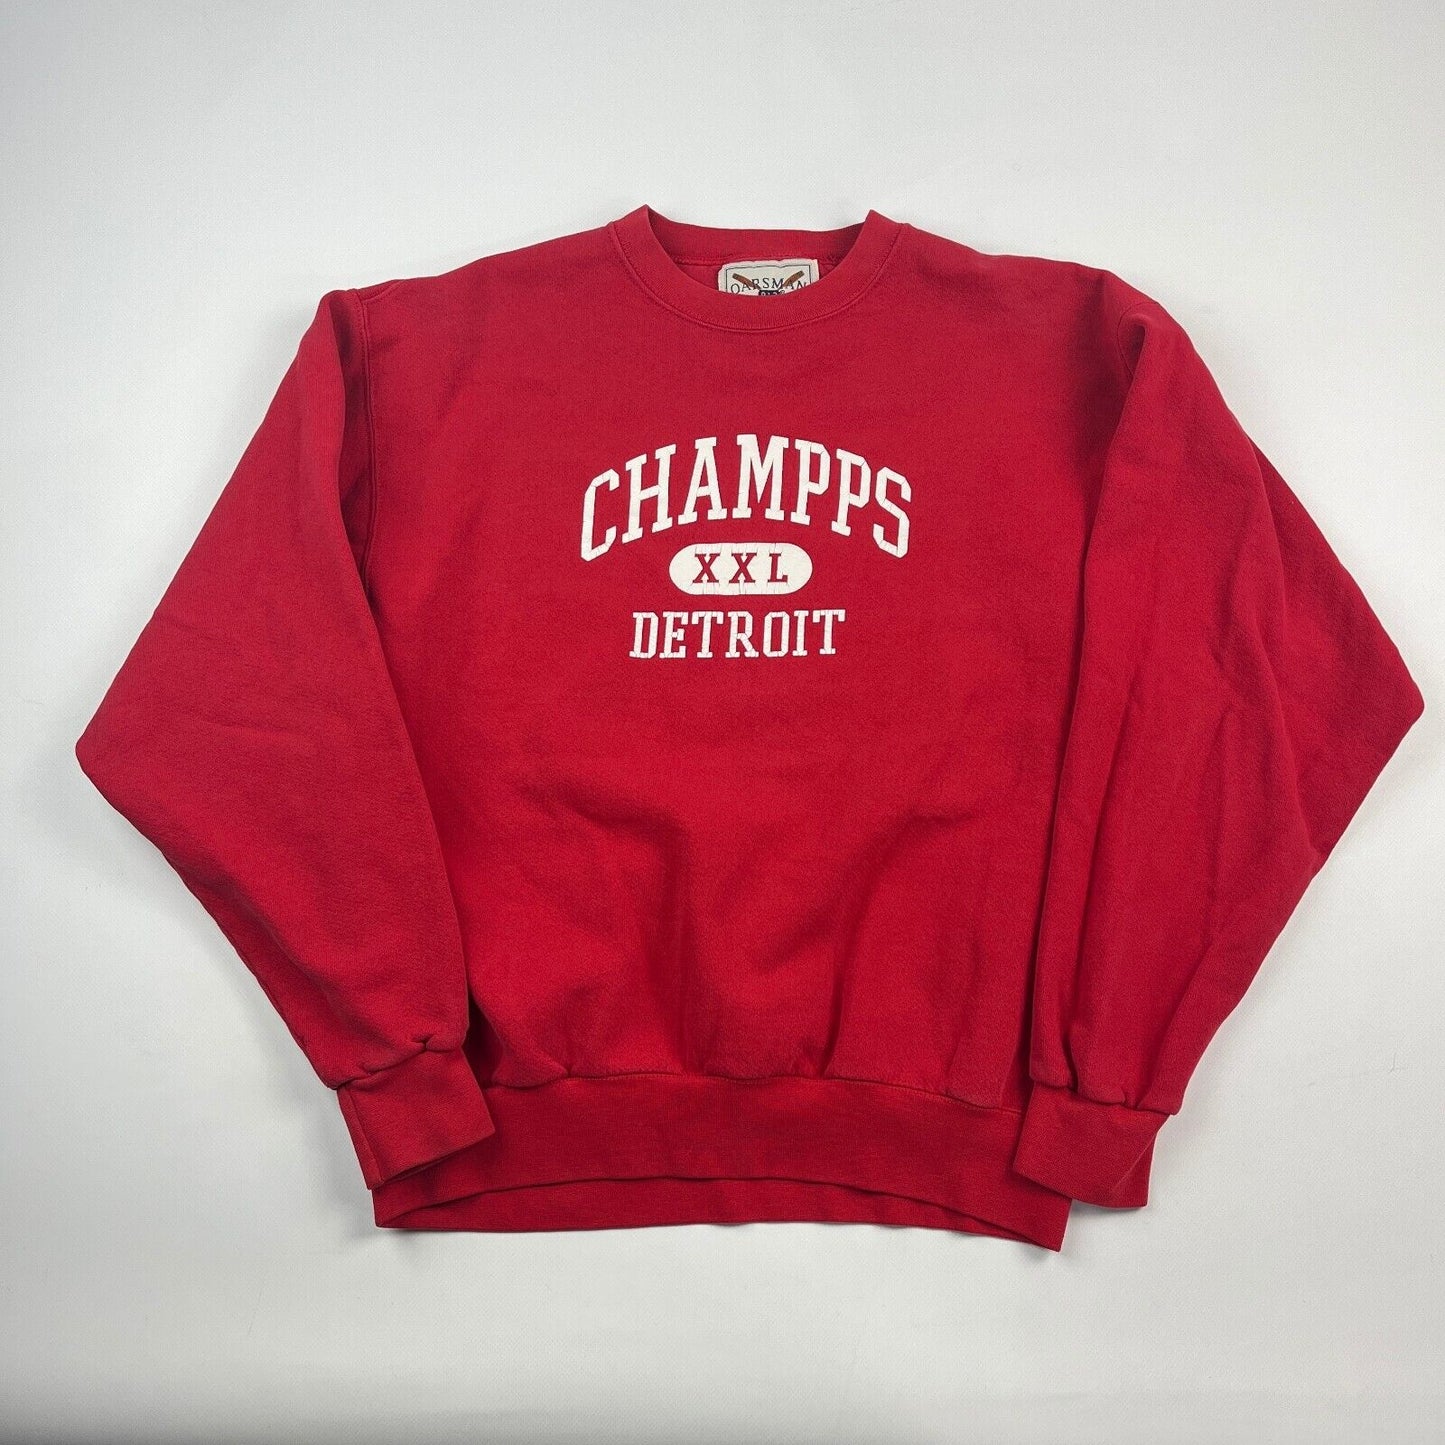 VINTAGE 90s Champs XXL Detroit Red Crewneck Sweater sz Large Men